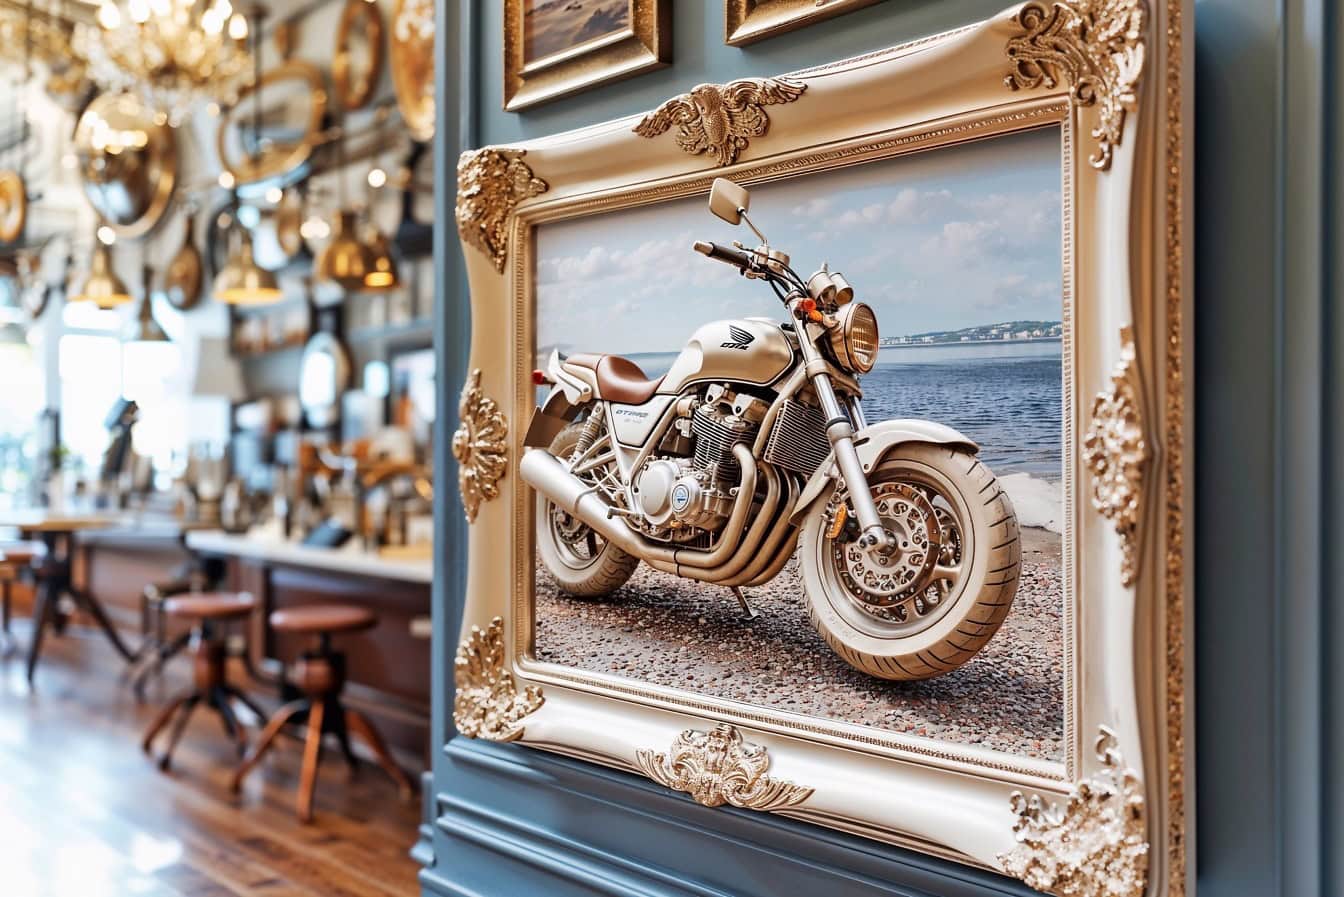 3D-зображення мотоцикла у вікторіанській рамці для фотографій, що висить на стіні всередині розкішного кафе-ресторану